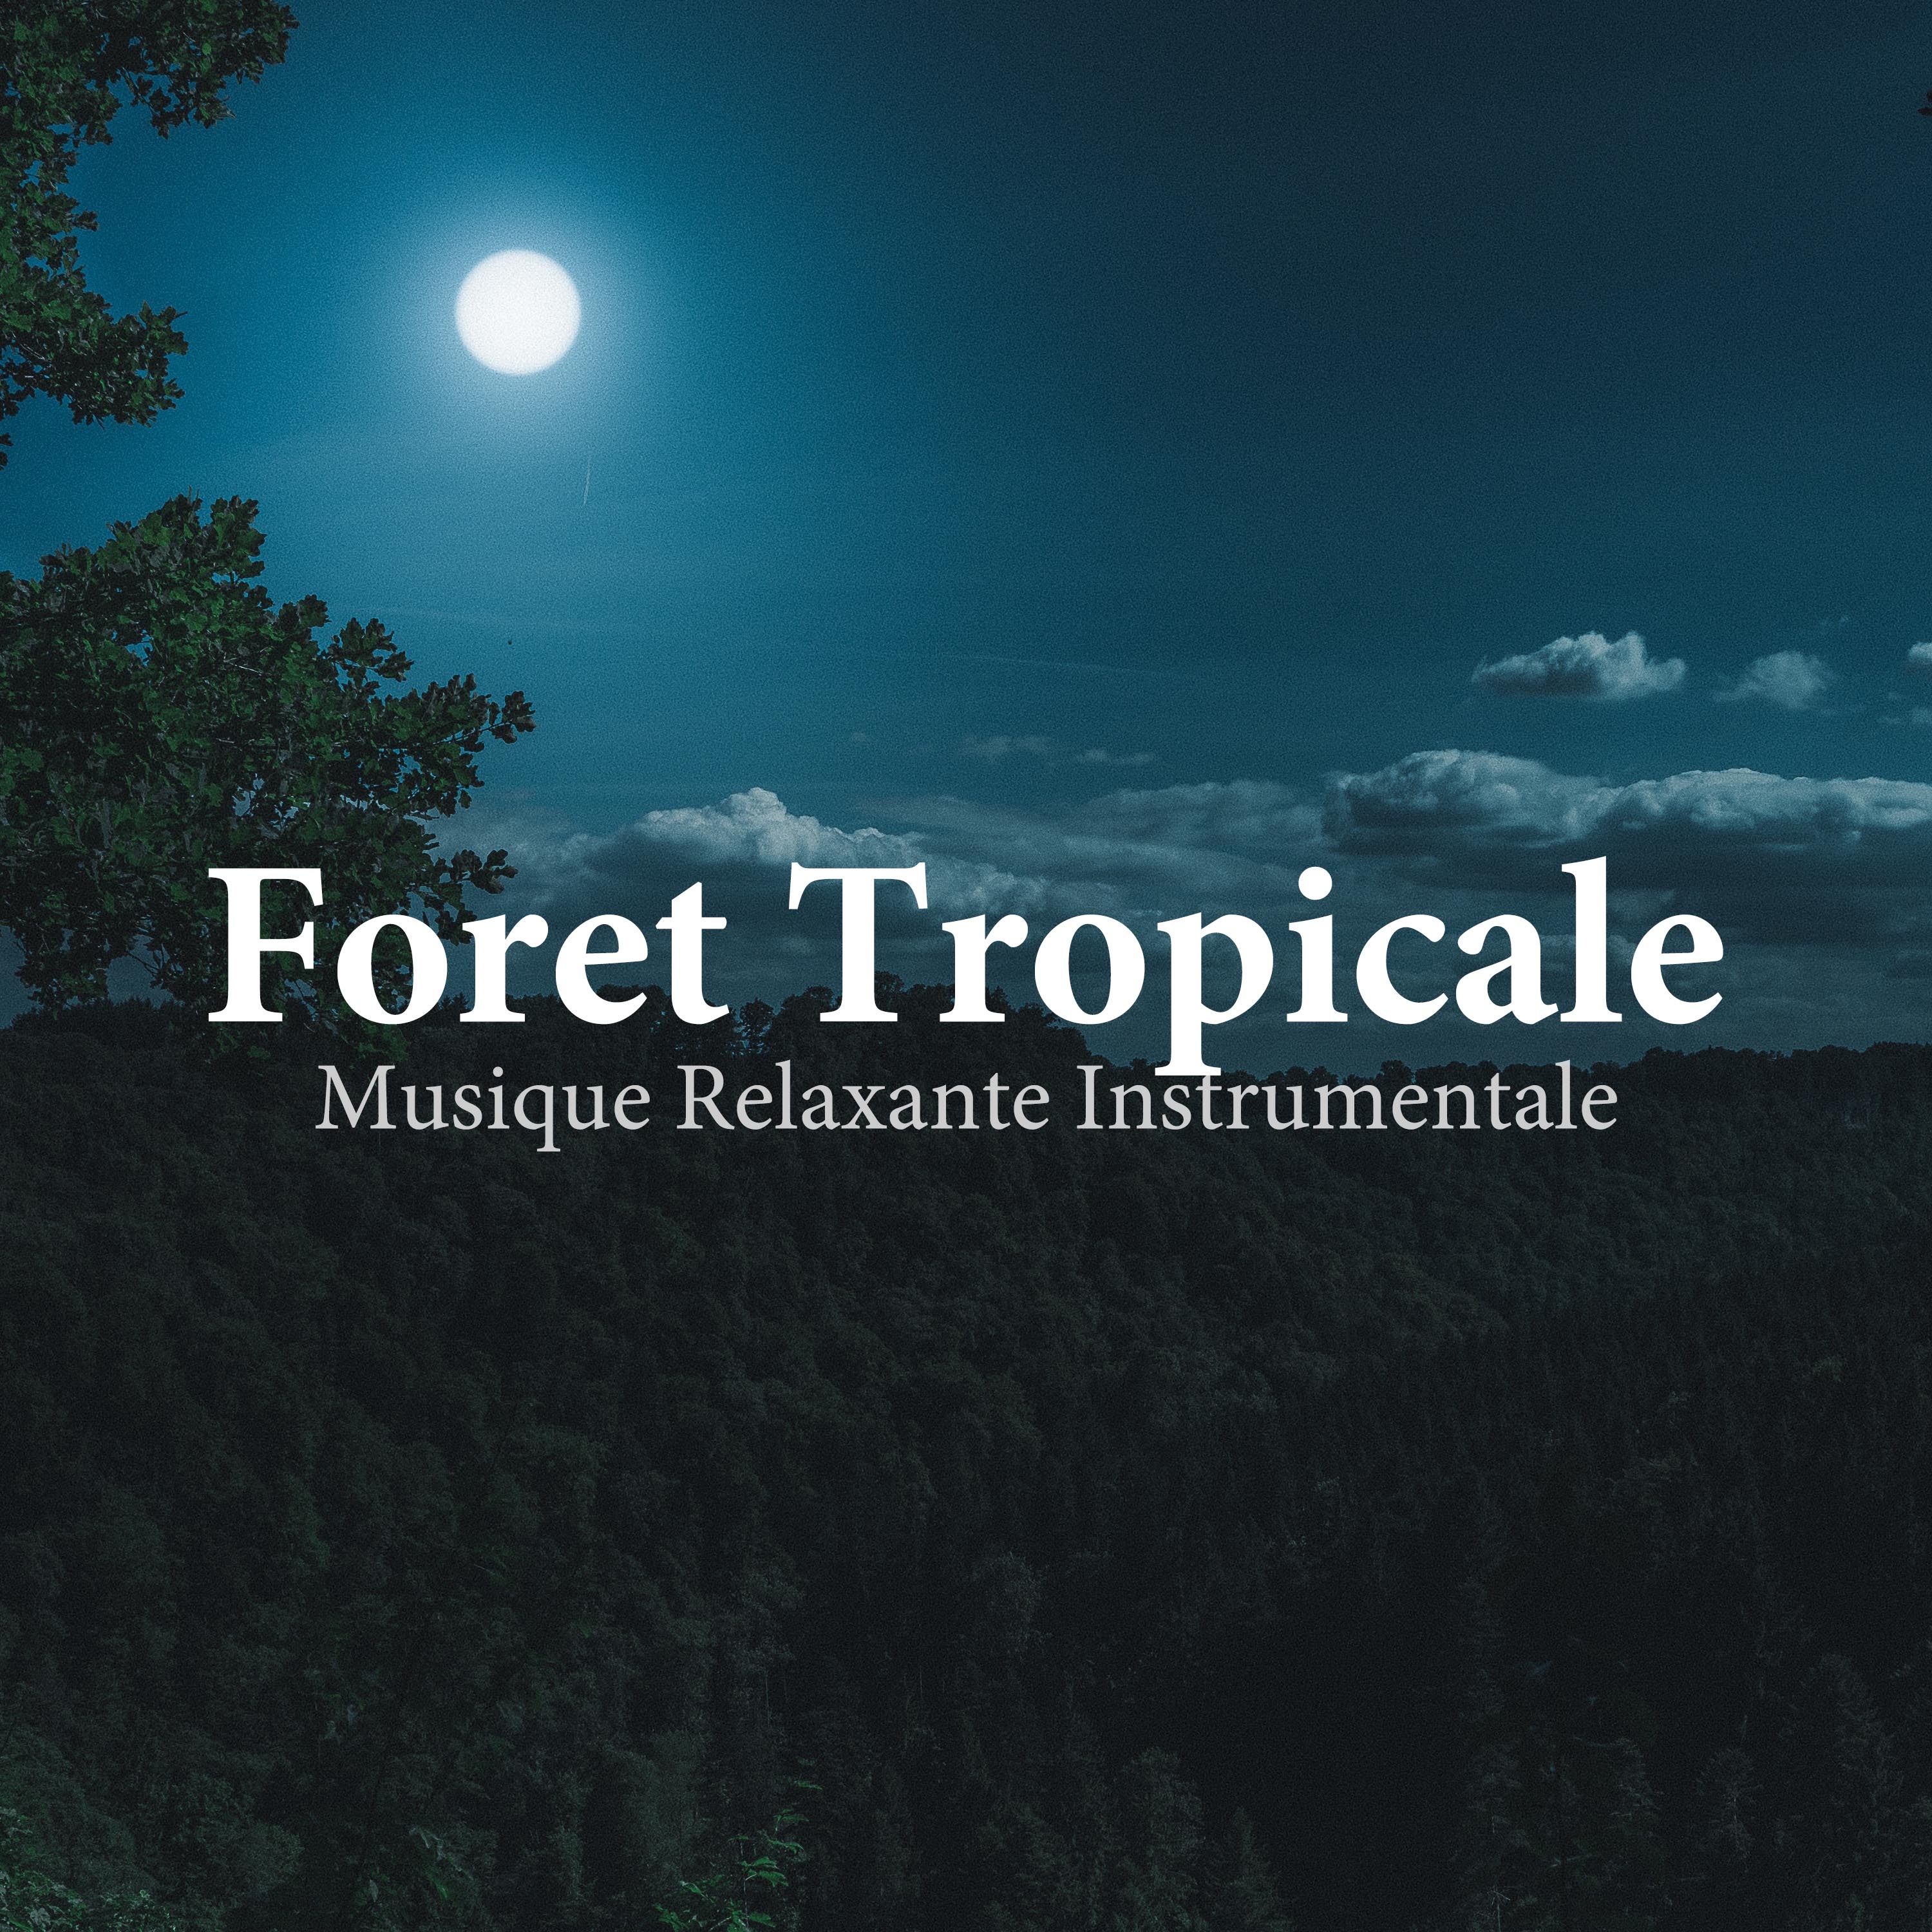 Foret Tropicale: Musique Relaxante Instrumentale, Ethnique Fl te et Nature, Ambiance de la For t Avec Bruit de L' eau